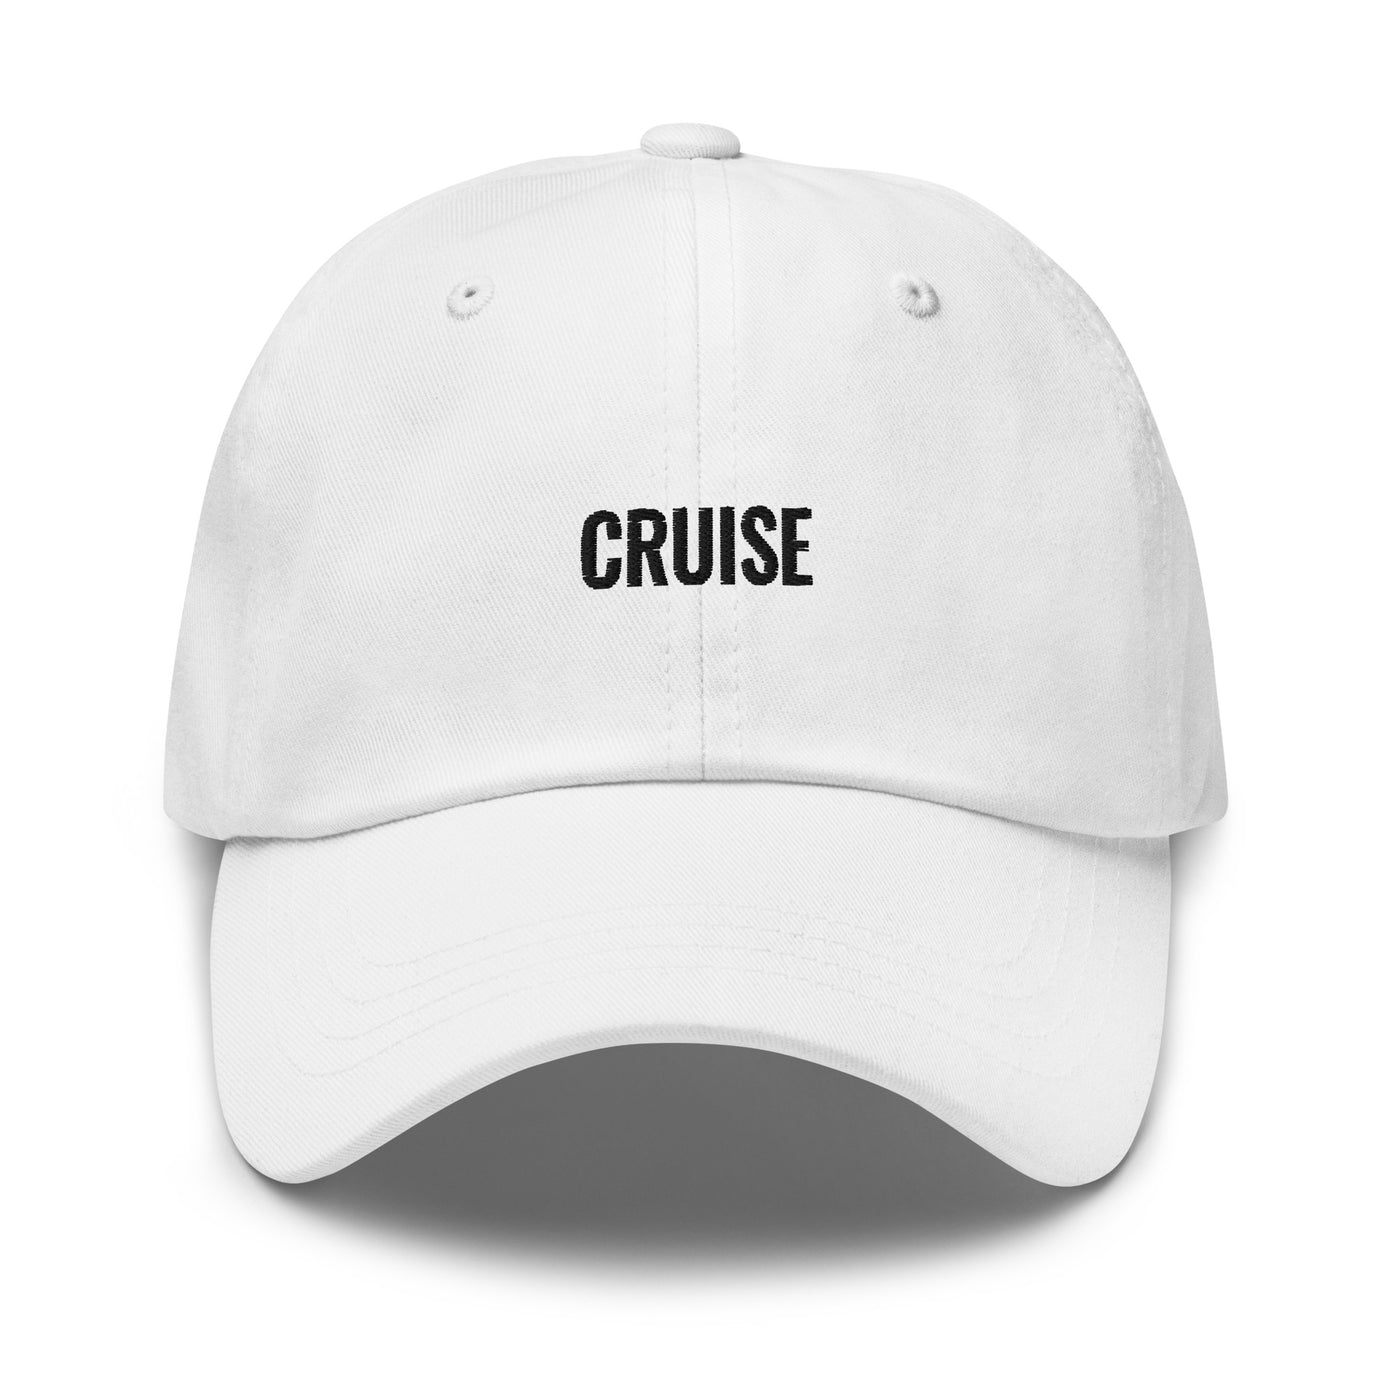 Cruise Unisex Hat